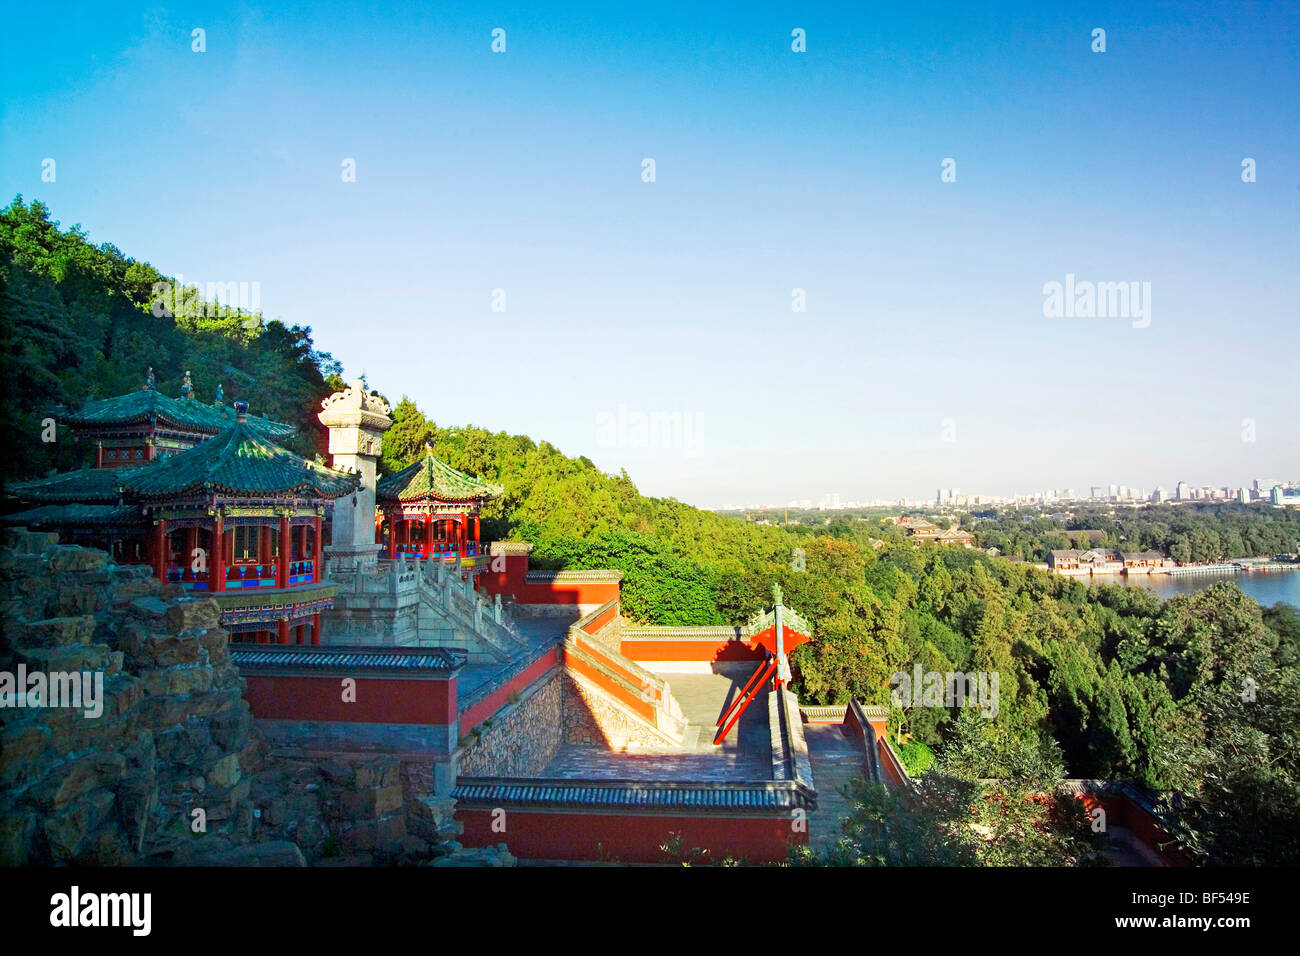 Archivi girevole, il Summer Palace, Pechino, Cina Foto Stock